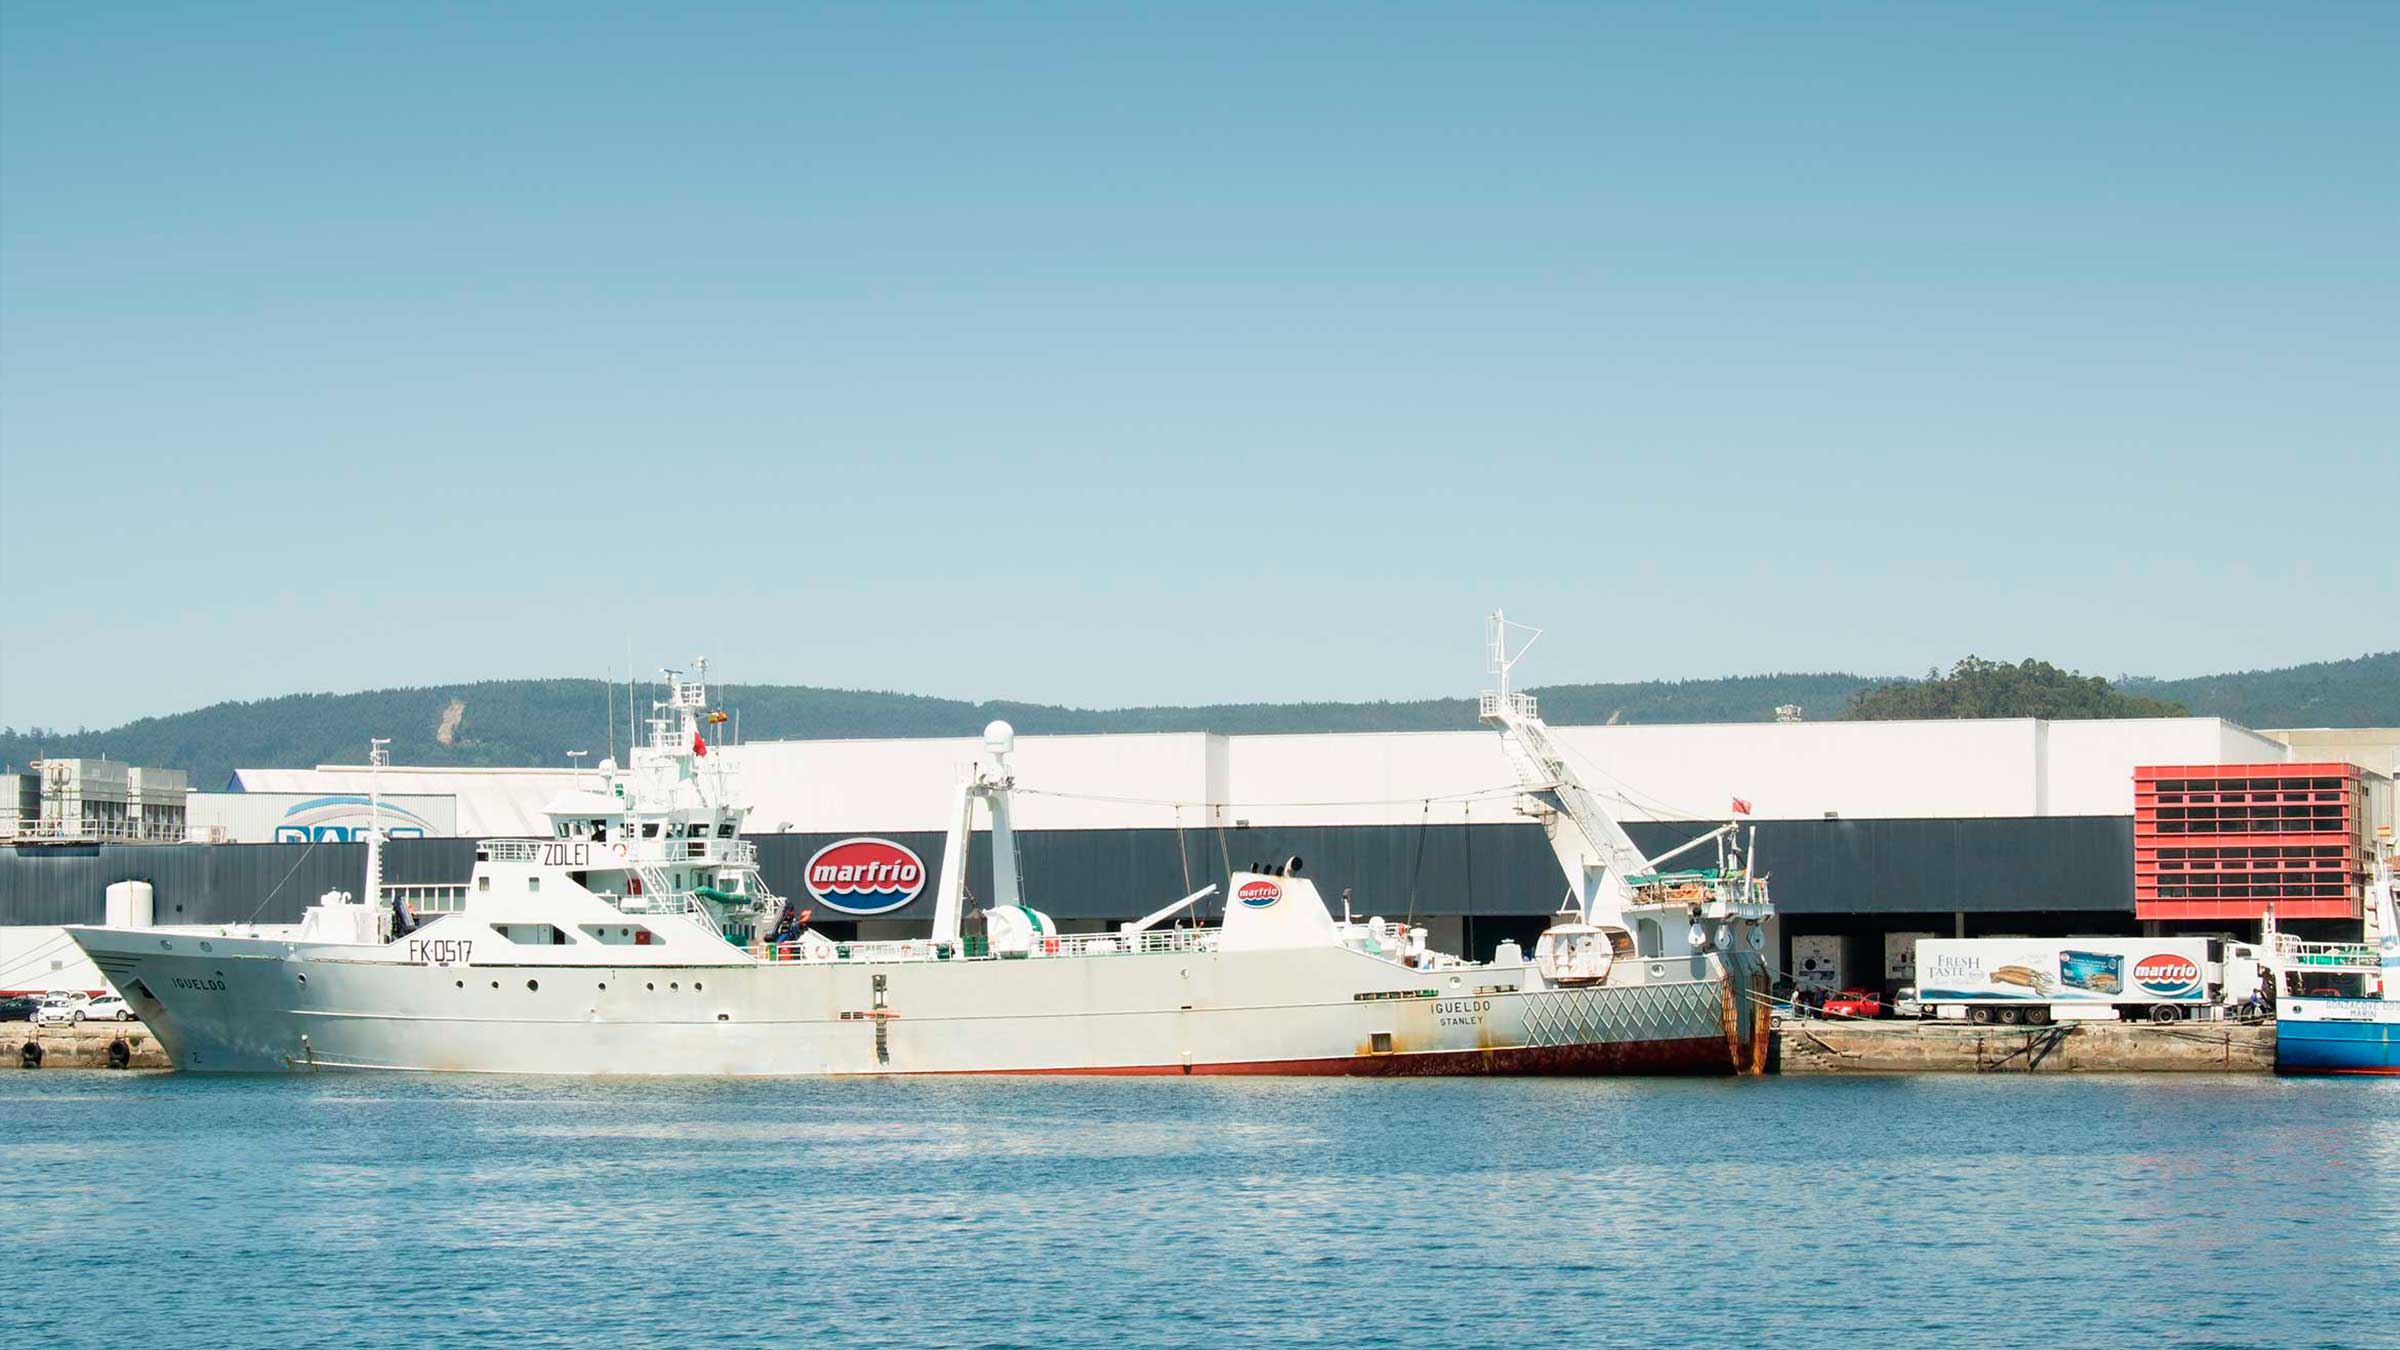 Buque Igueldo descargando Calamar patagónico en Marfrio, en el Puerto de Marín